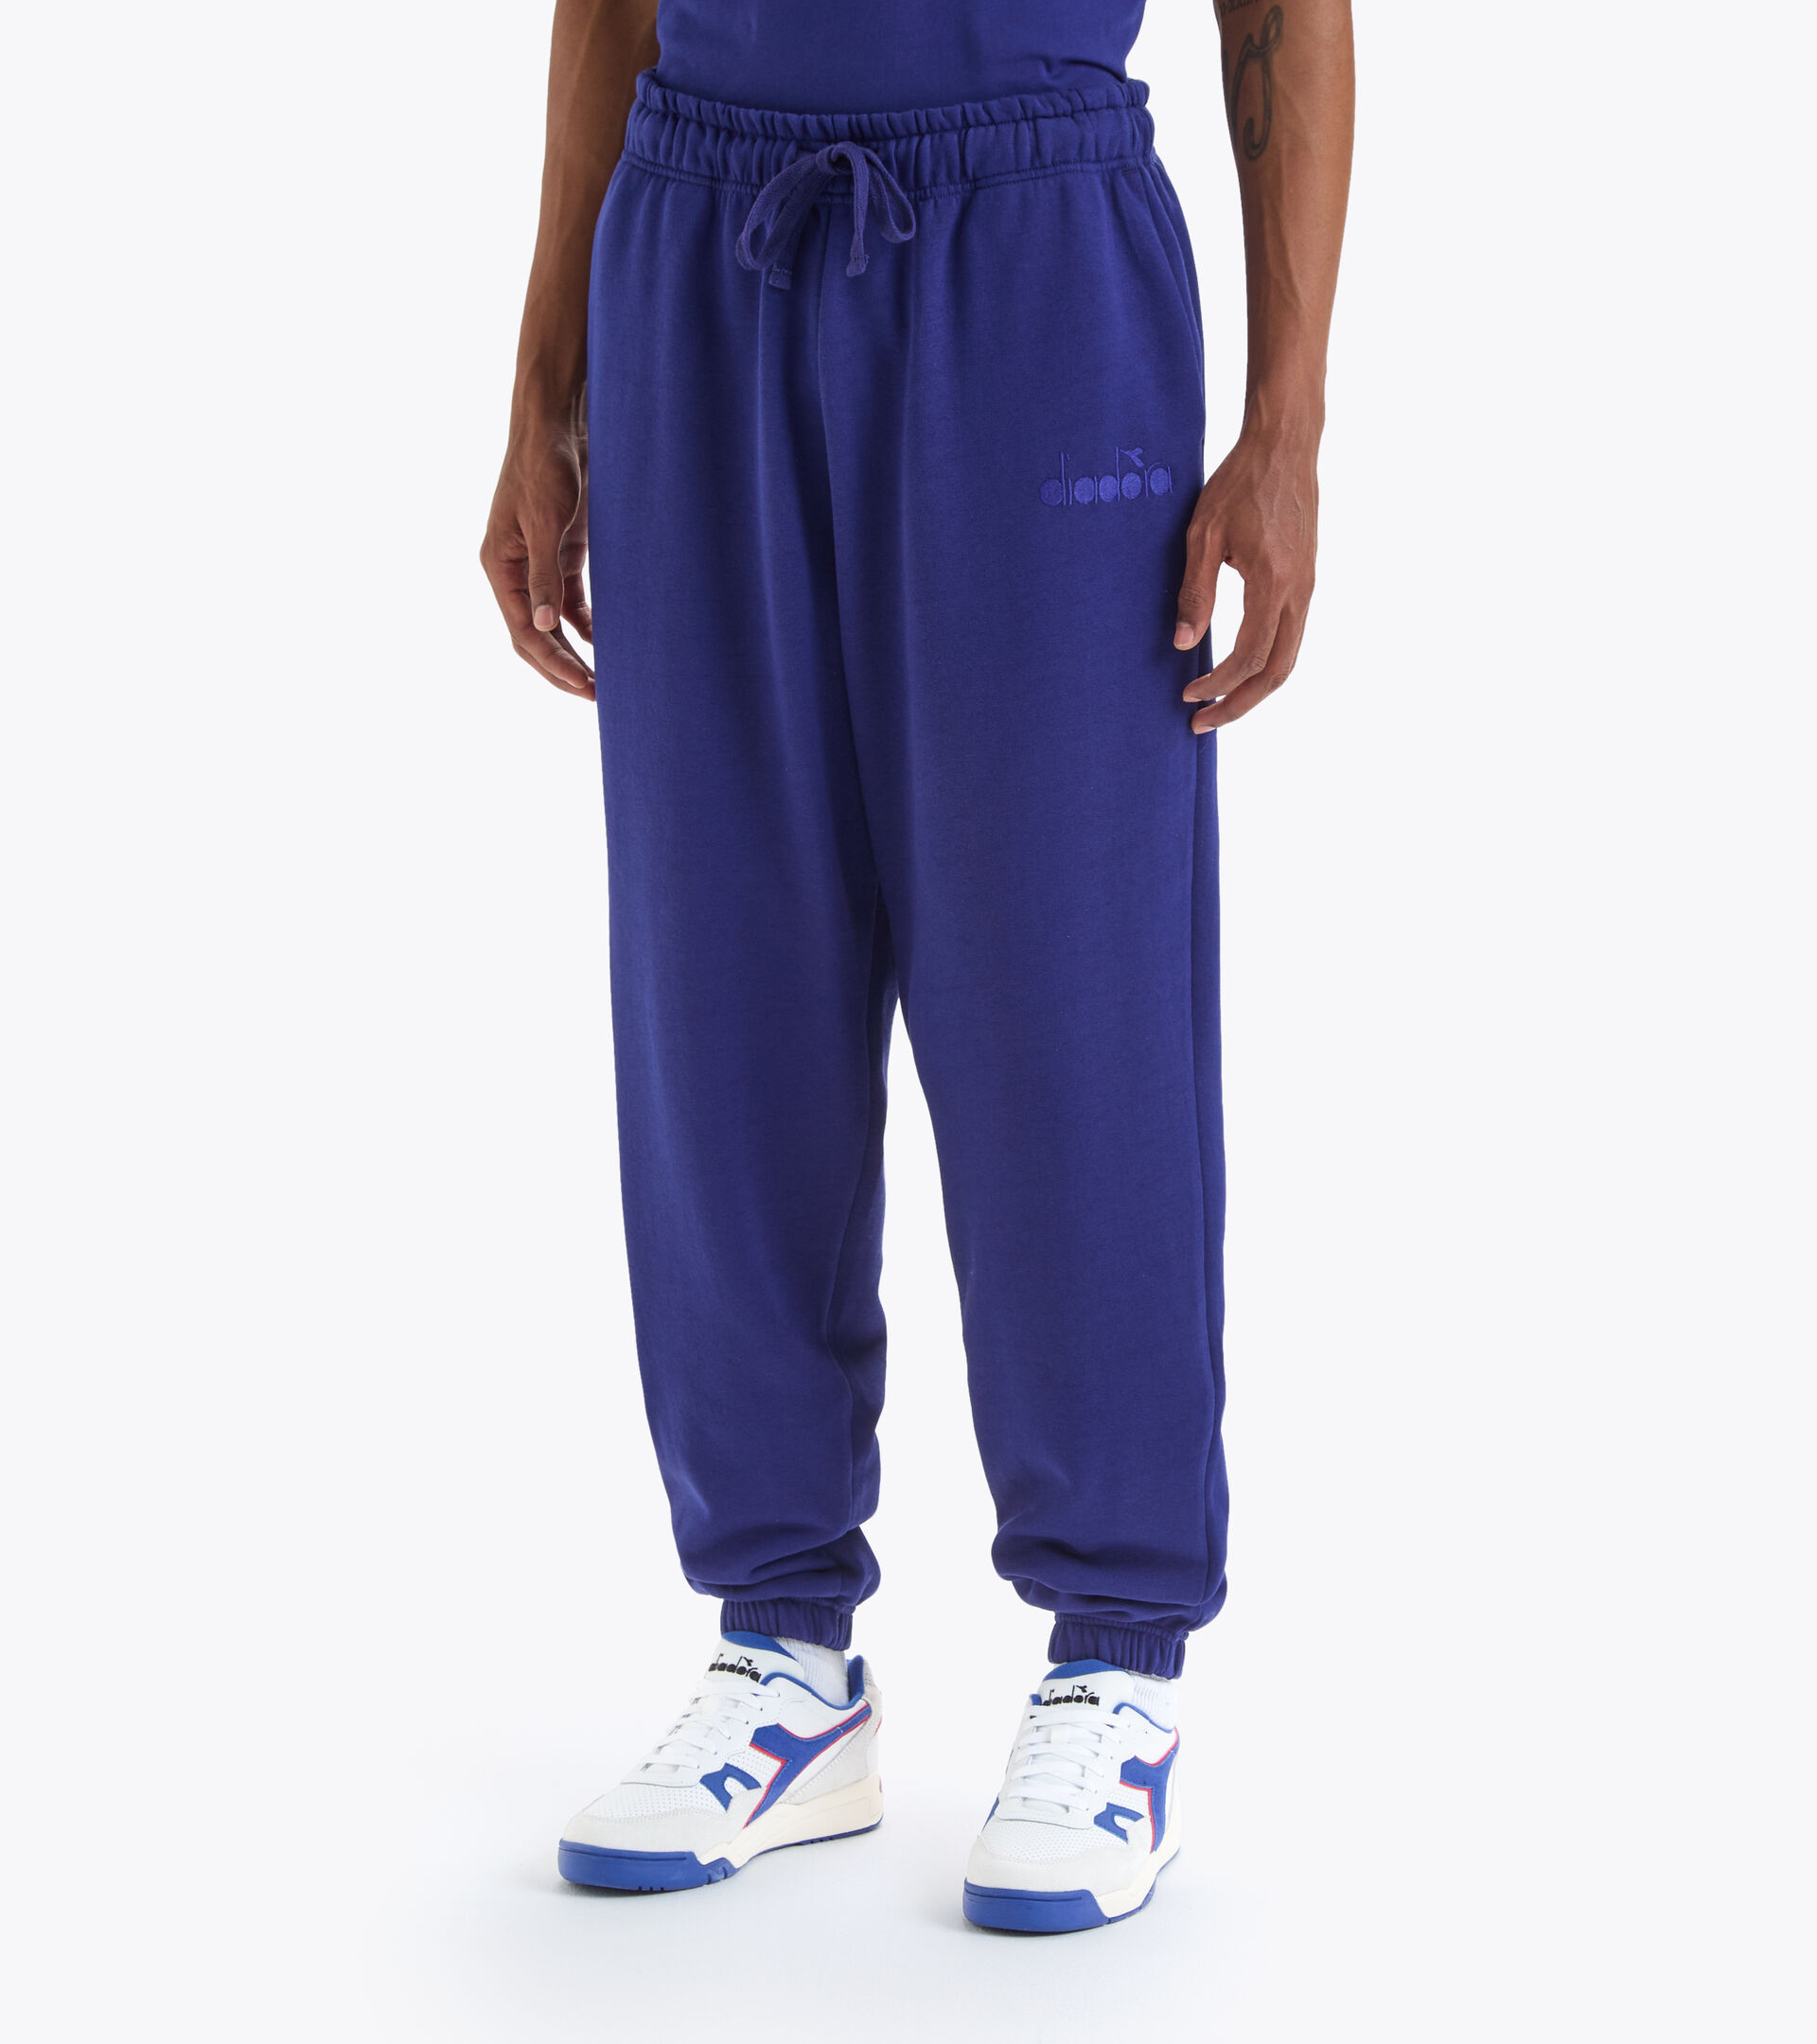 Cotton sweatpants - Gender neutral PANT SPW LOGO BLUE PRINT - Diadora